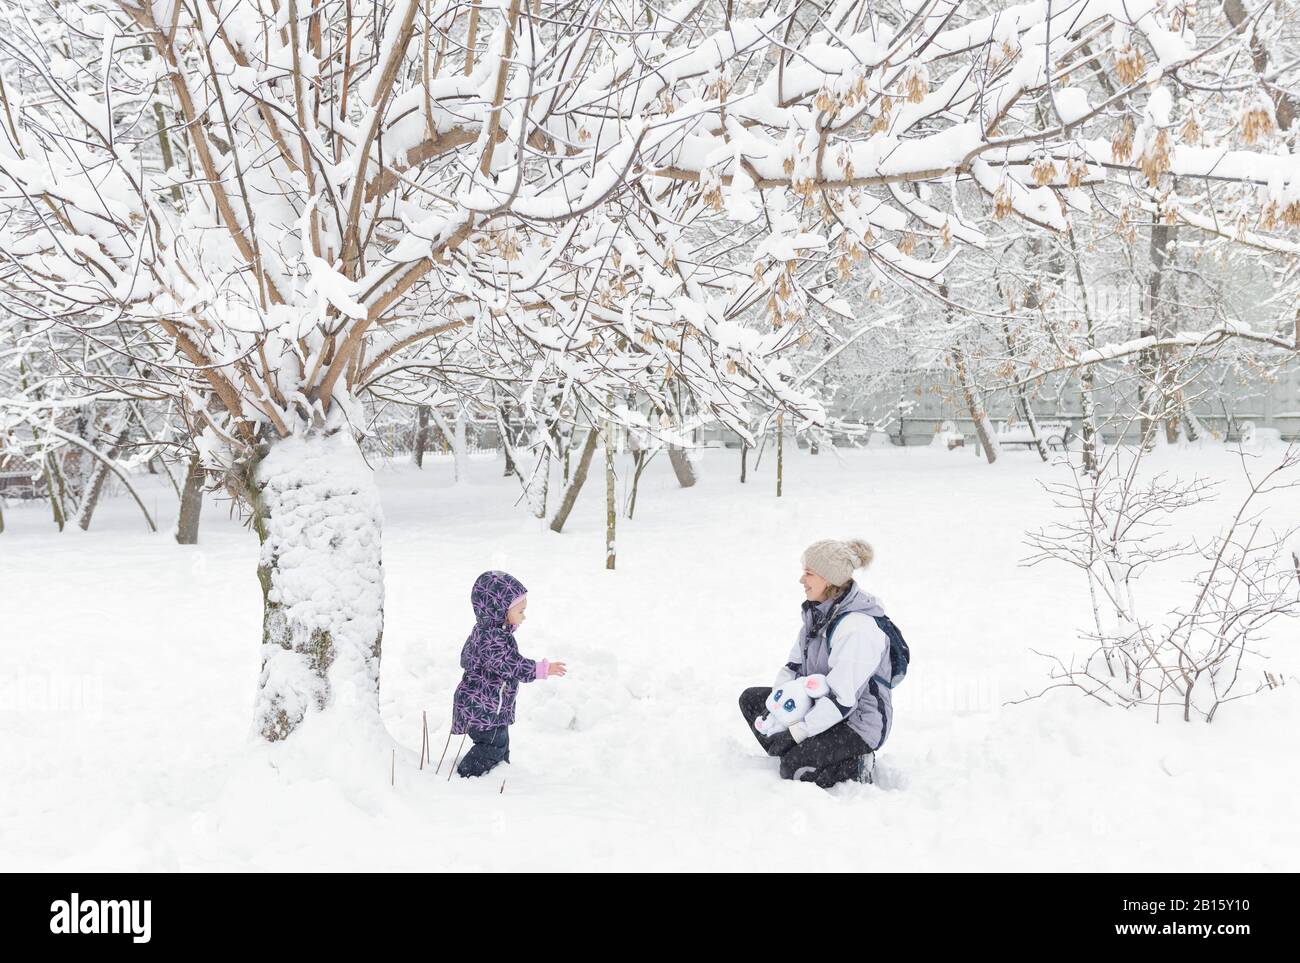 Petit enfant avec la mère marcher dans un parc enneigé en hiver. Une fillette joue dans la neige. Promenades en famille pendant la chute de neige. Banque D'Images